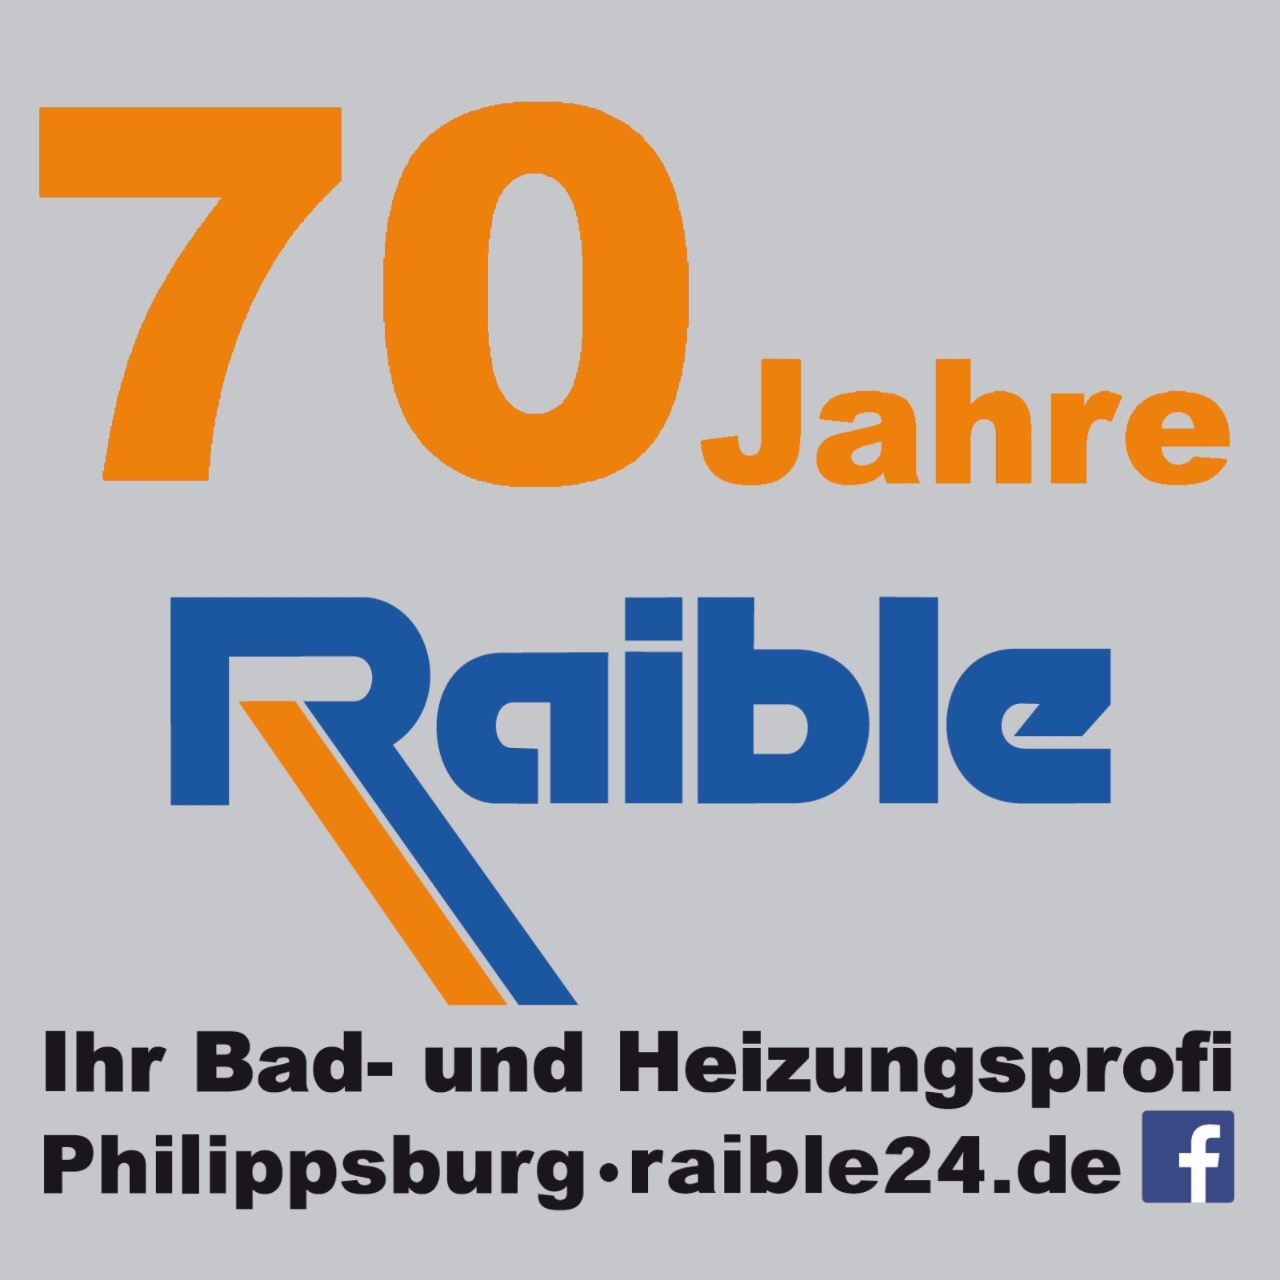 Raible Solar Sanitär und 
Heizungstechnik in
Philippsburg, Oberhausen und Waghäusel